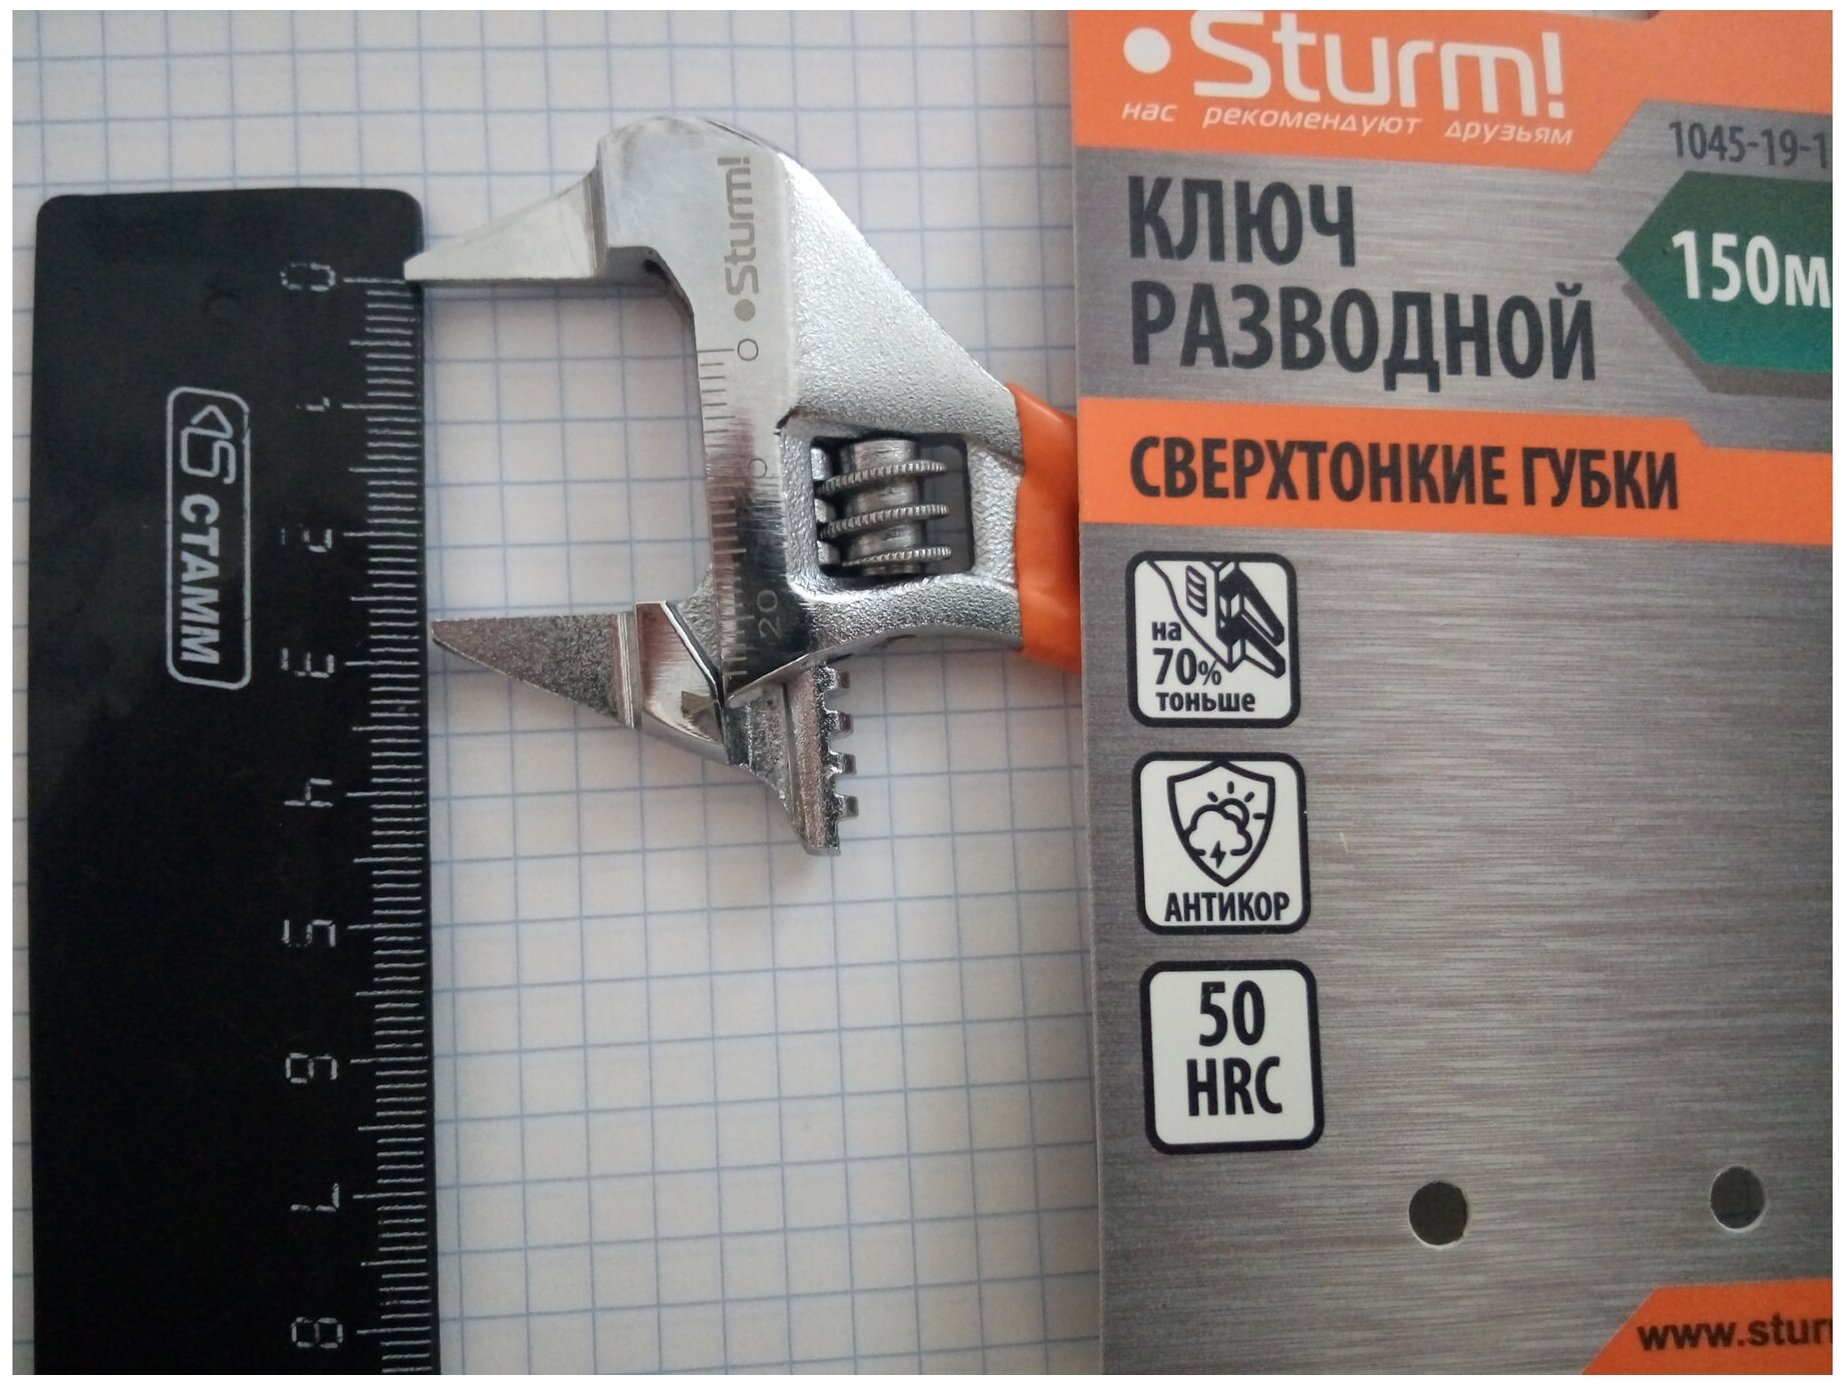 Ключ разводной Sturm 120 мм 1045-19-150 - фотография № 8